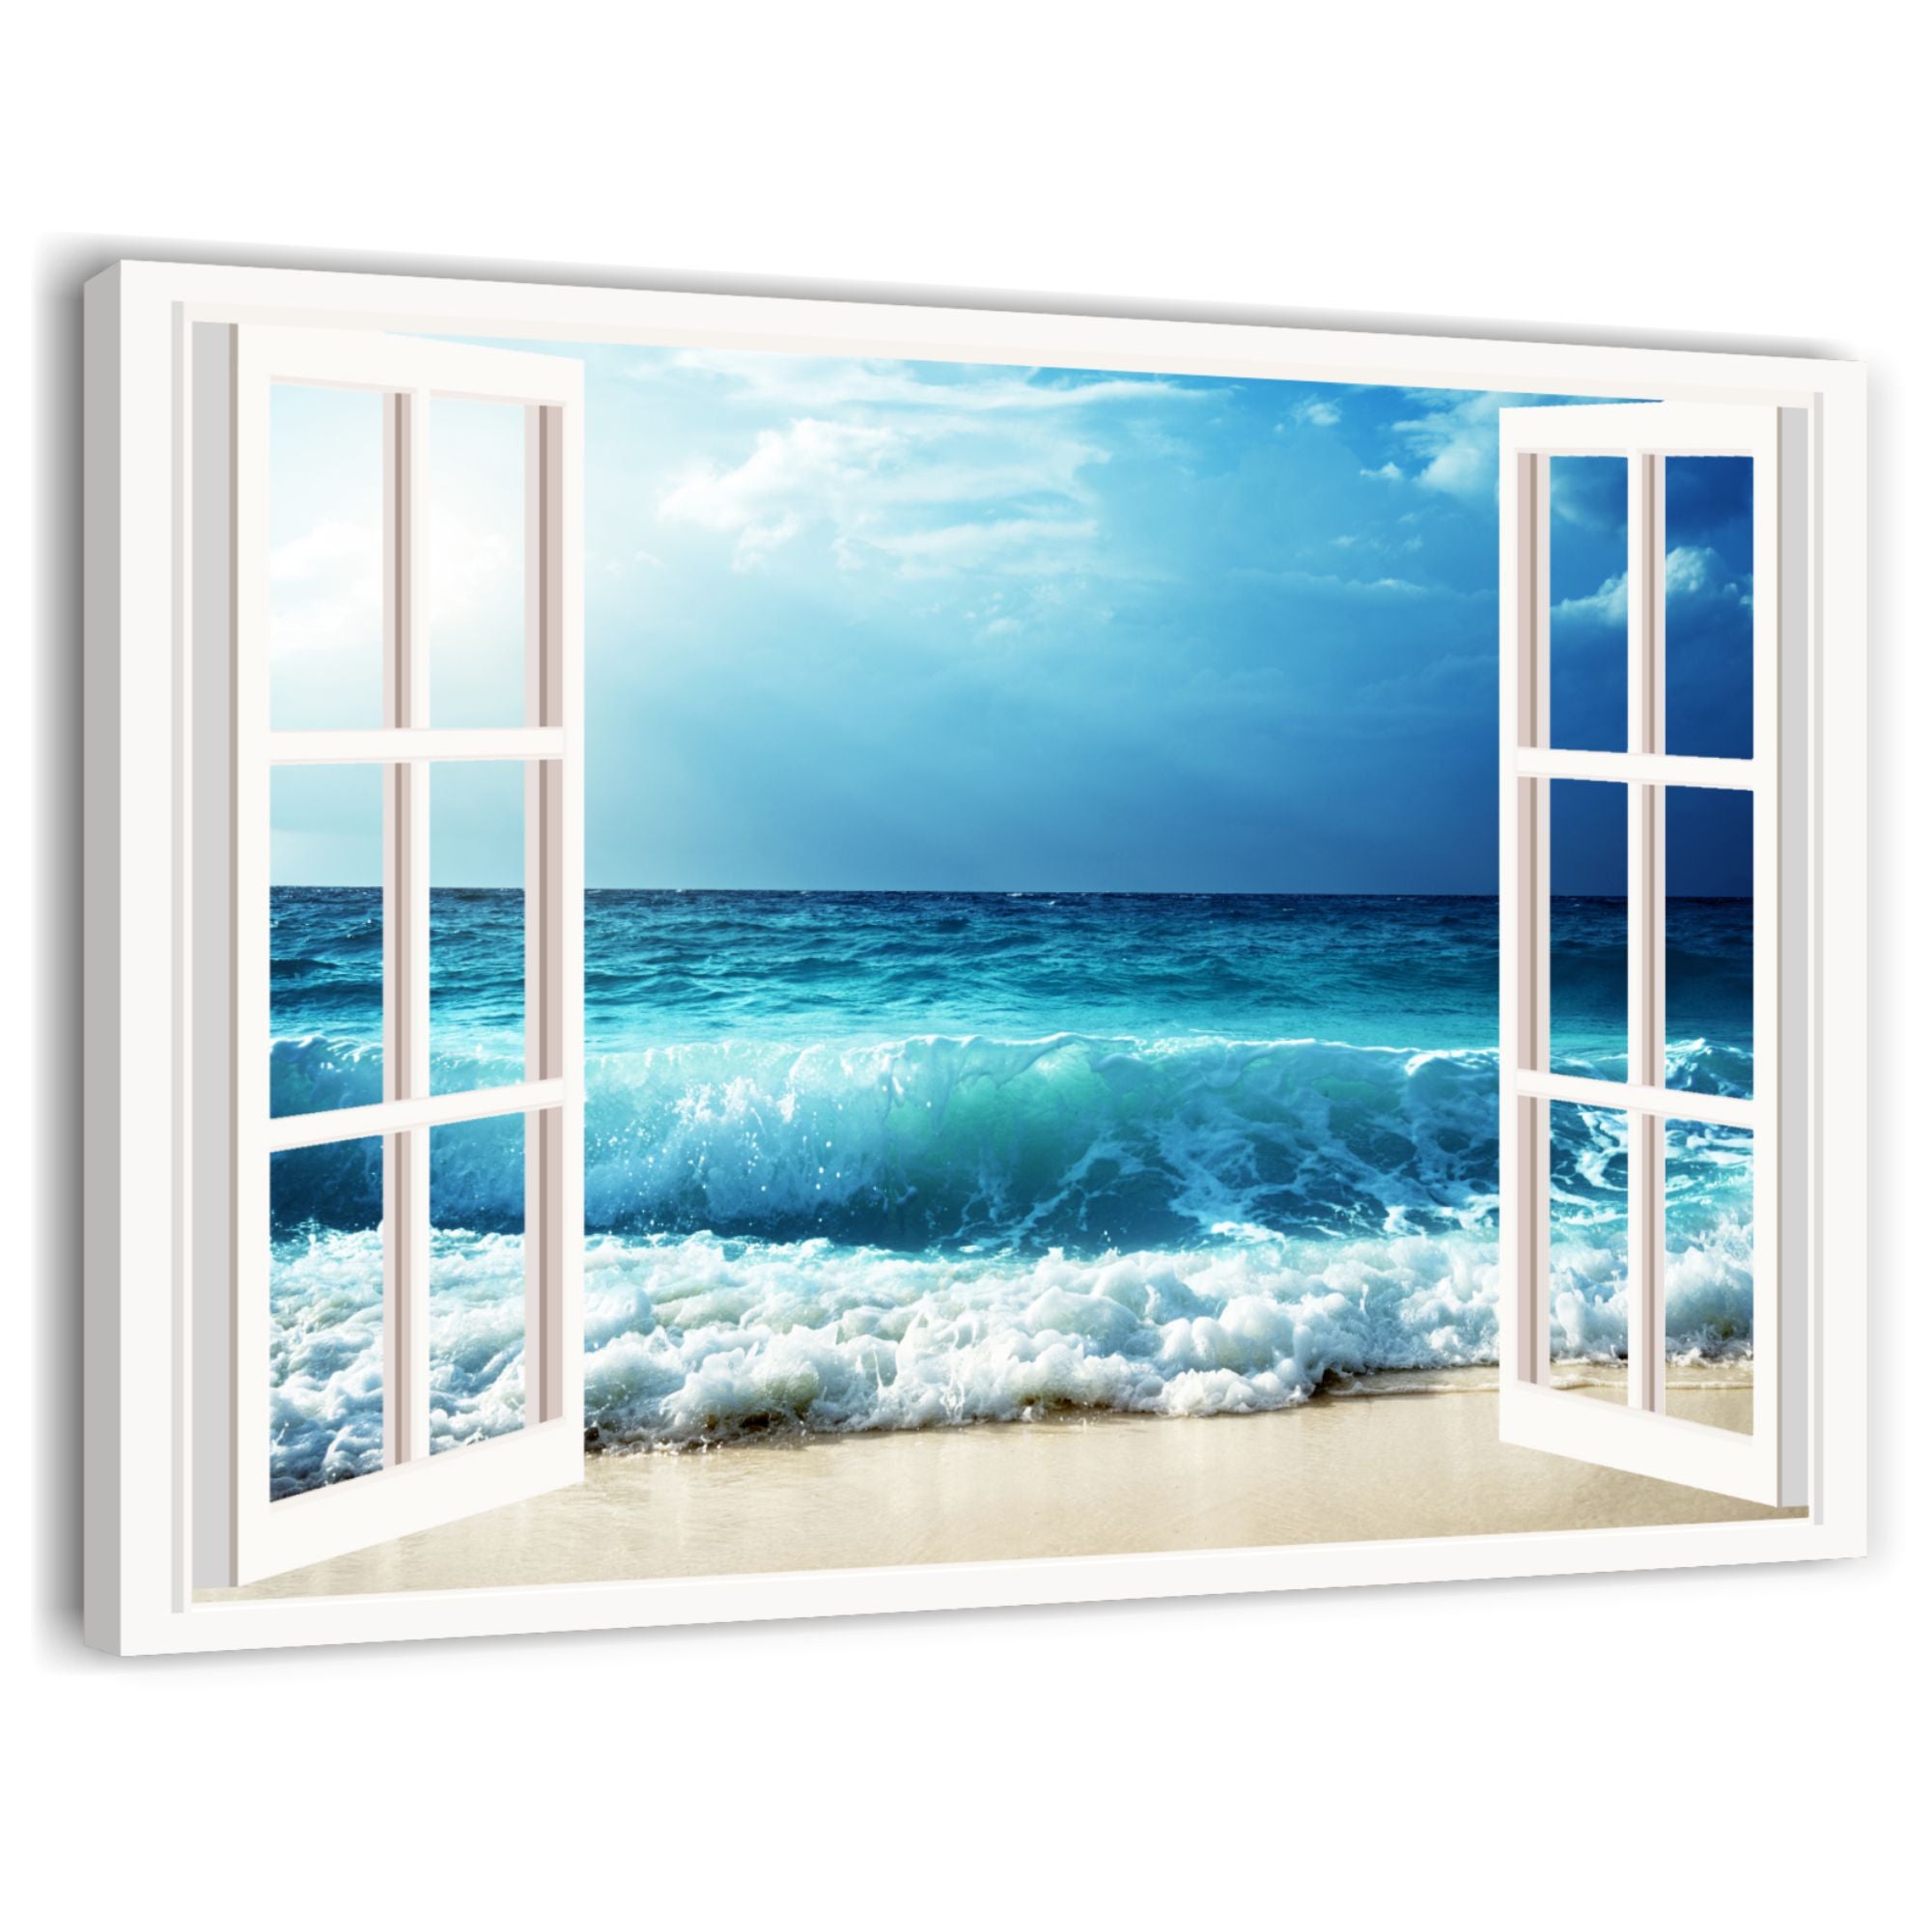 Mare e finestra 1 - Quadro moderno con paesaggio marino stampa su tela  100x70 cm